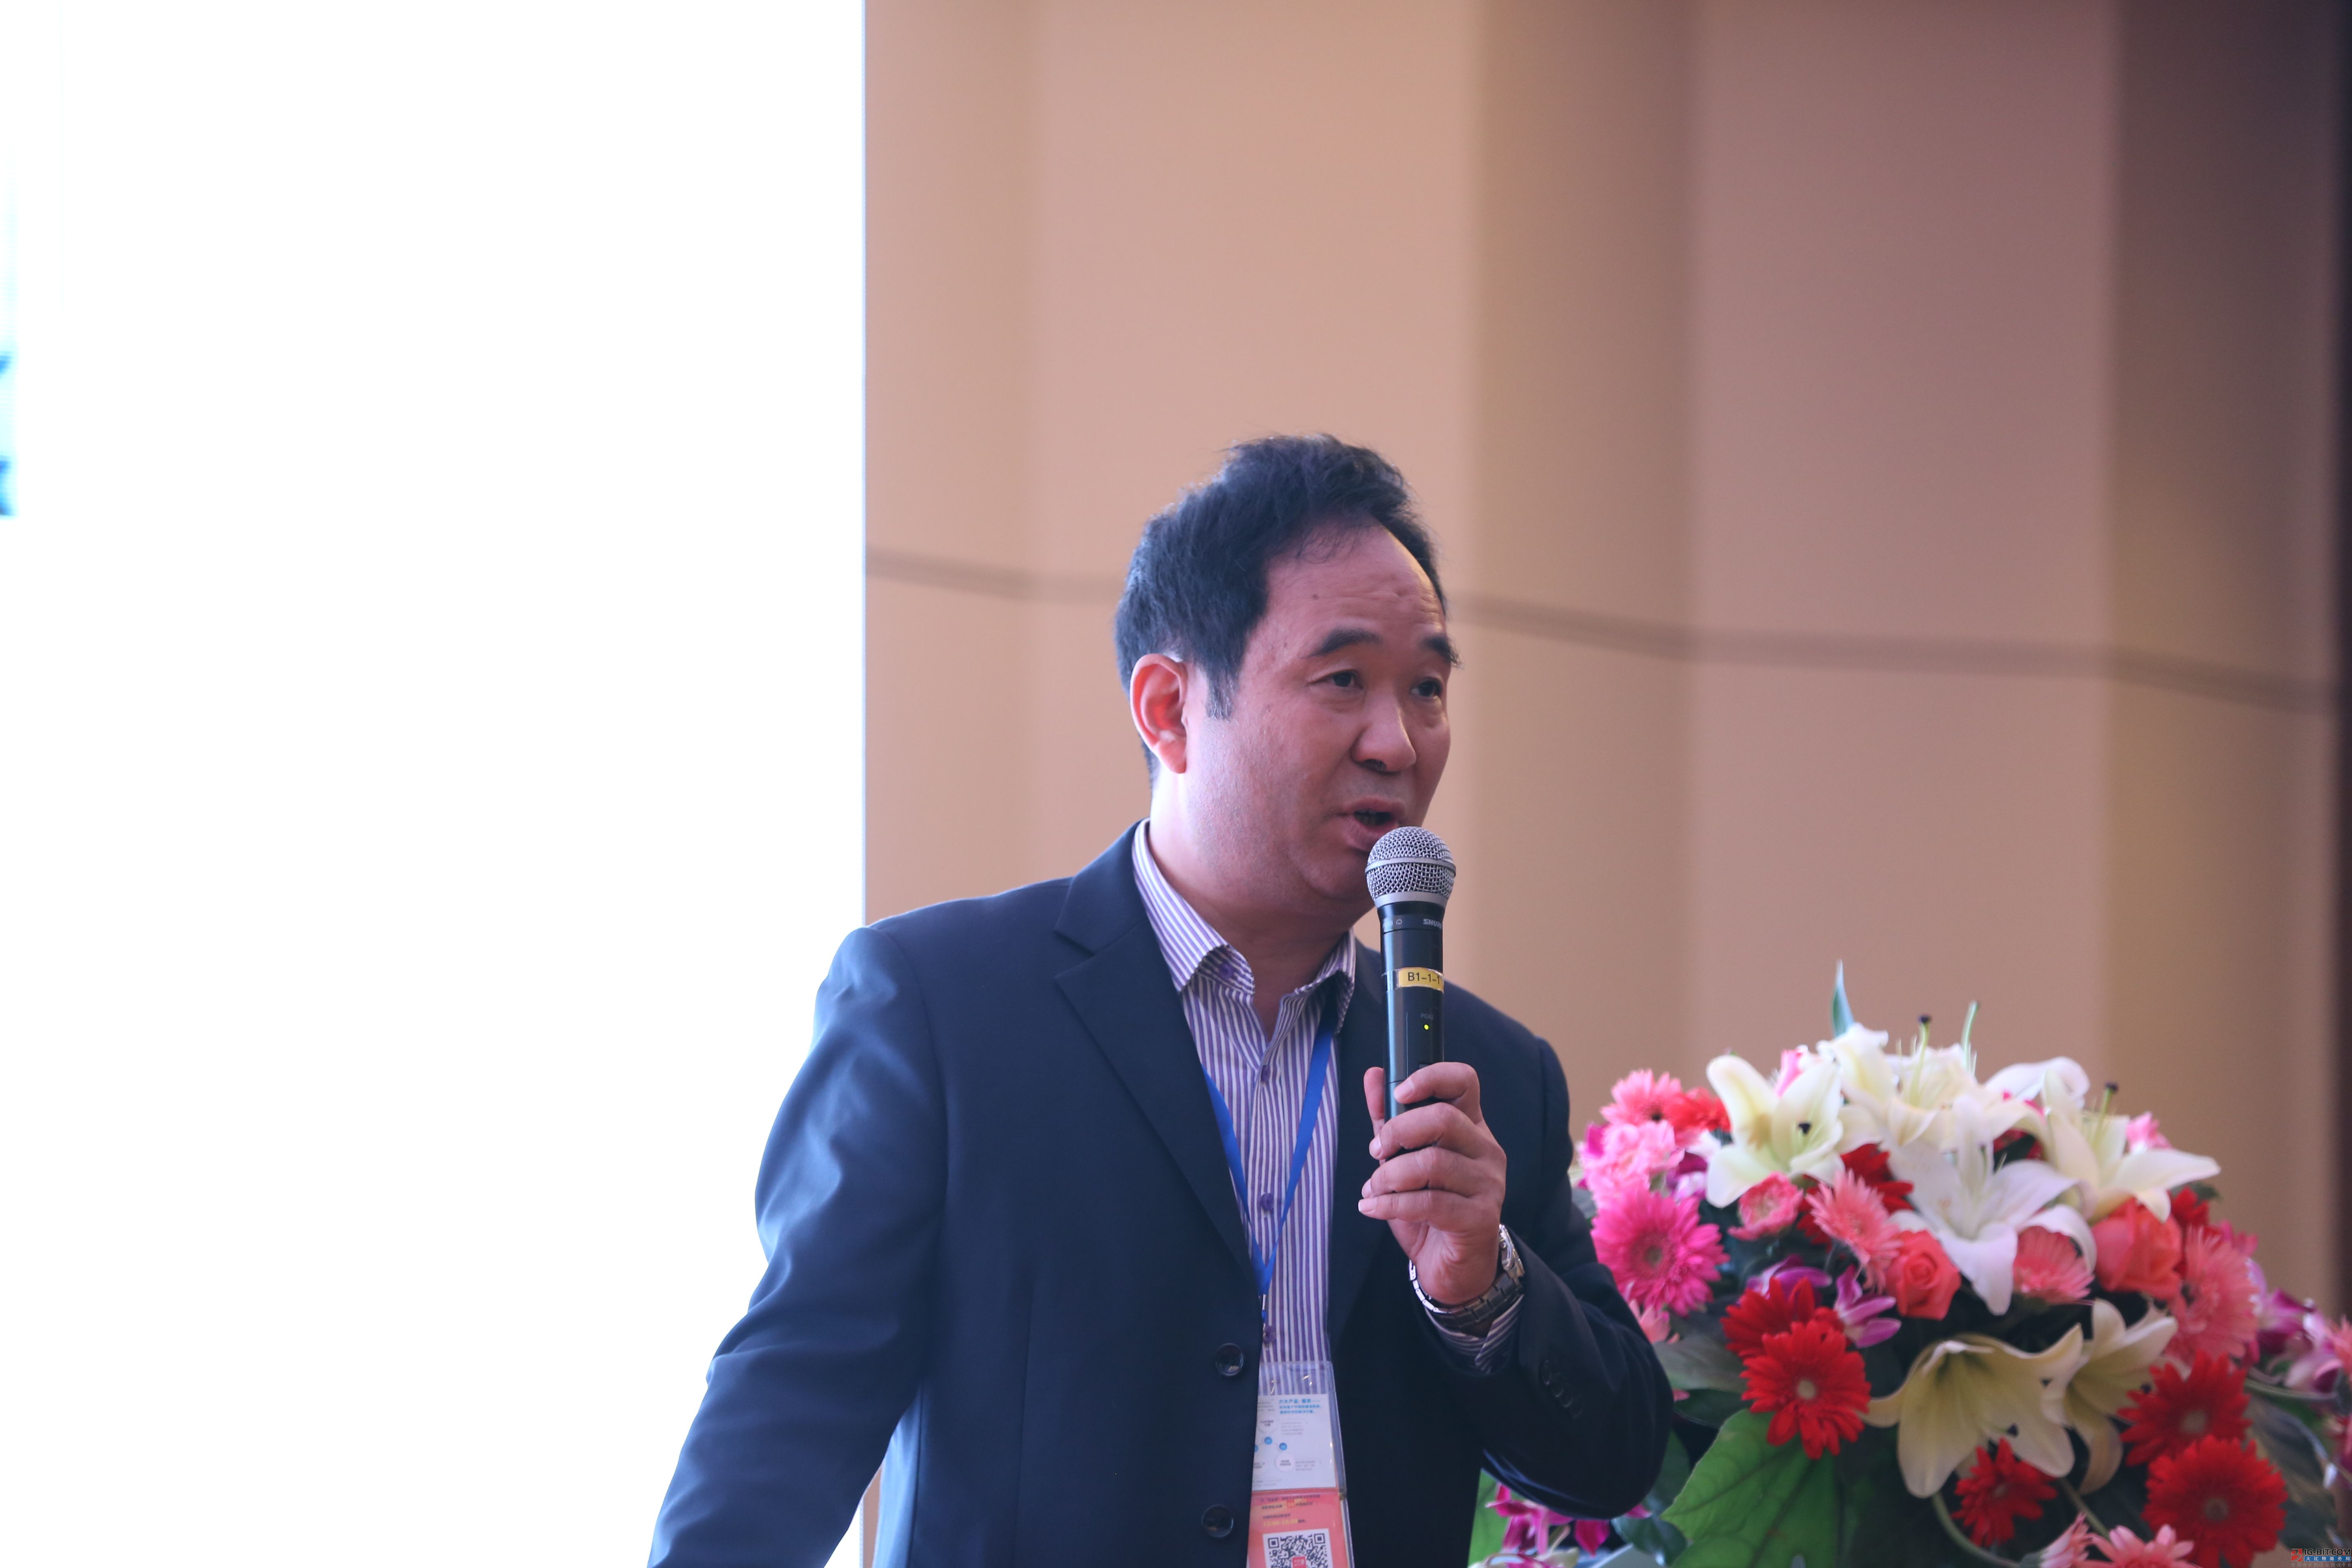 深圳市连接器行业协会EMC首席专家马永健:互联技术与电磁兼容